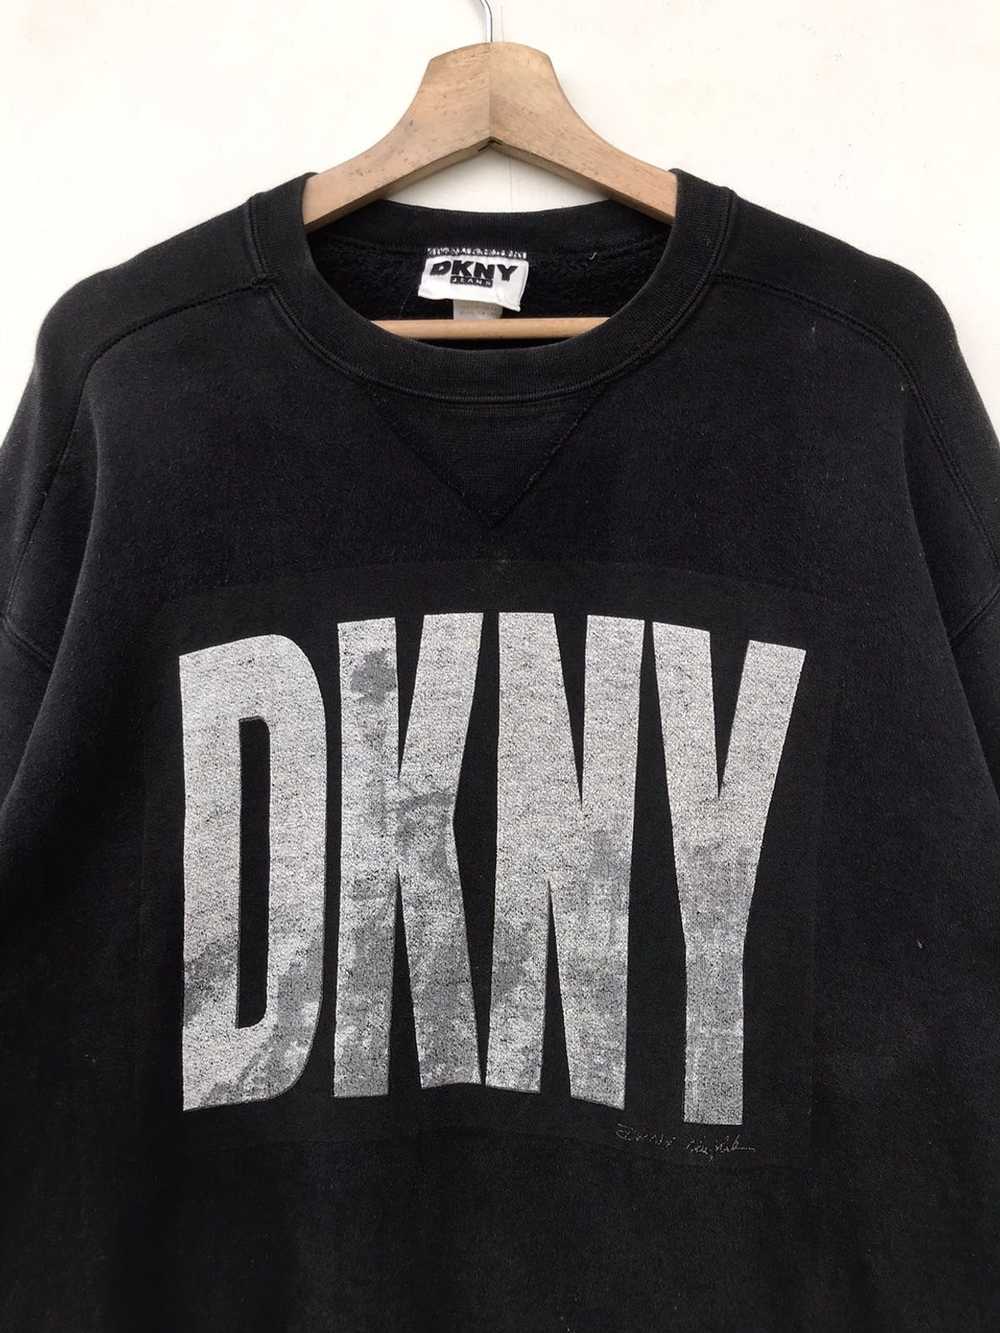 DKNY × Streetwear × Vintage Vintage DKNY Jeans Bi… - image 5